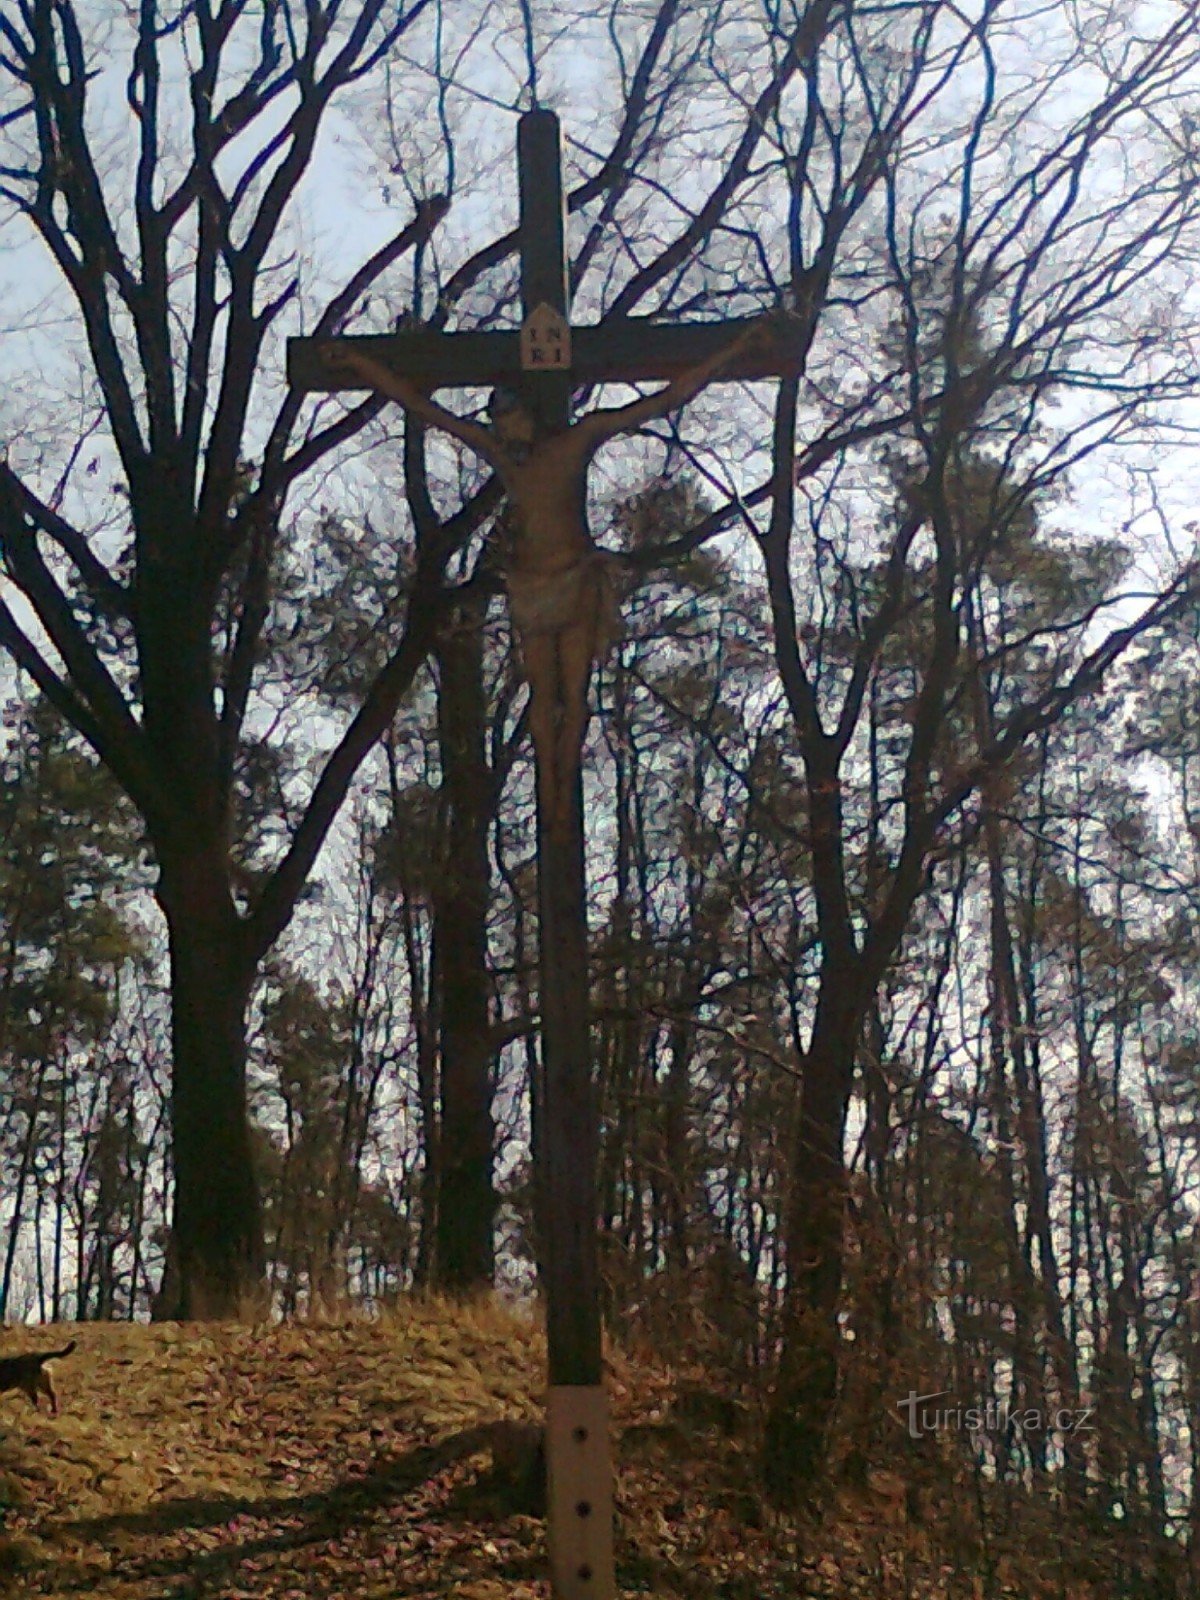 Úsov - дерев'яний хрест на Křížová gora